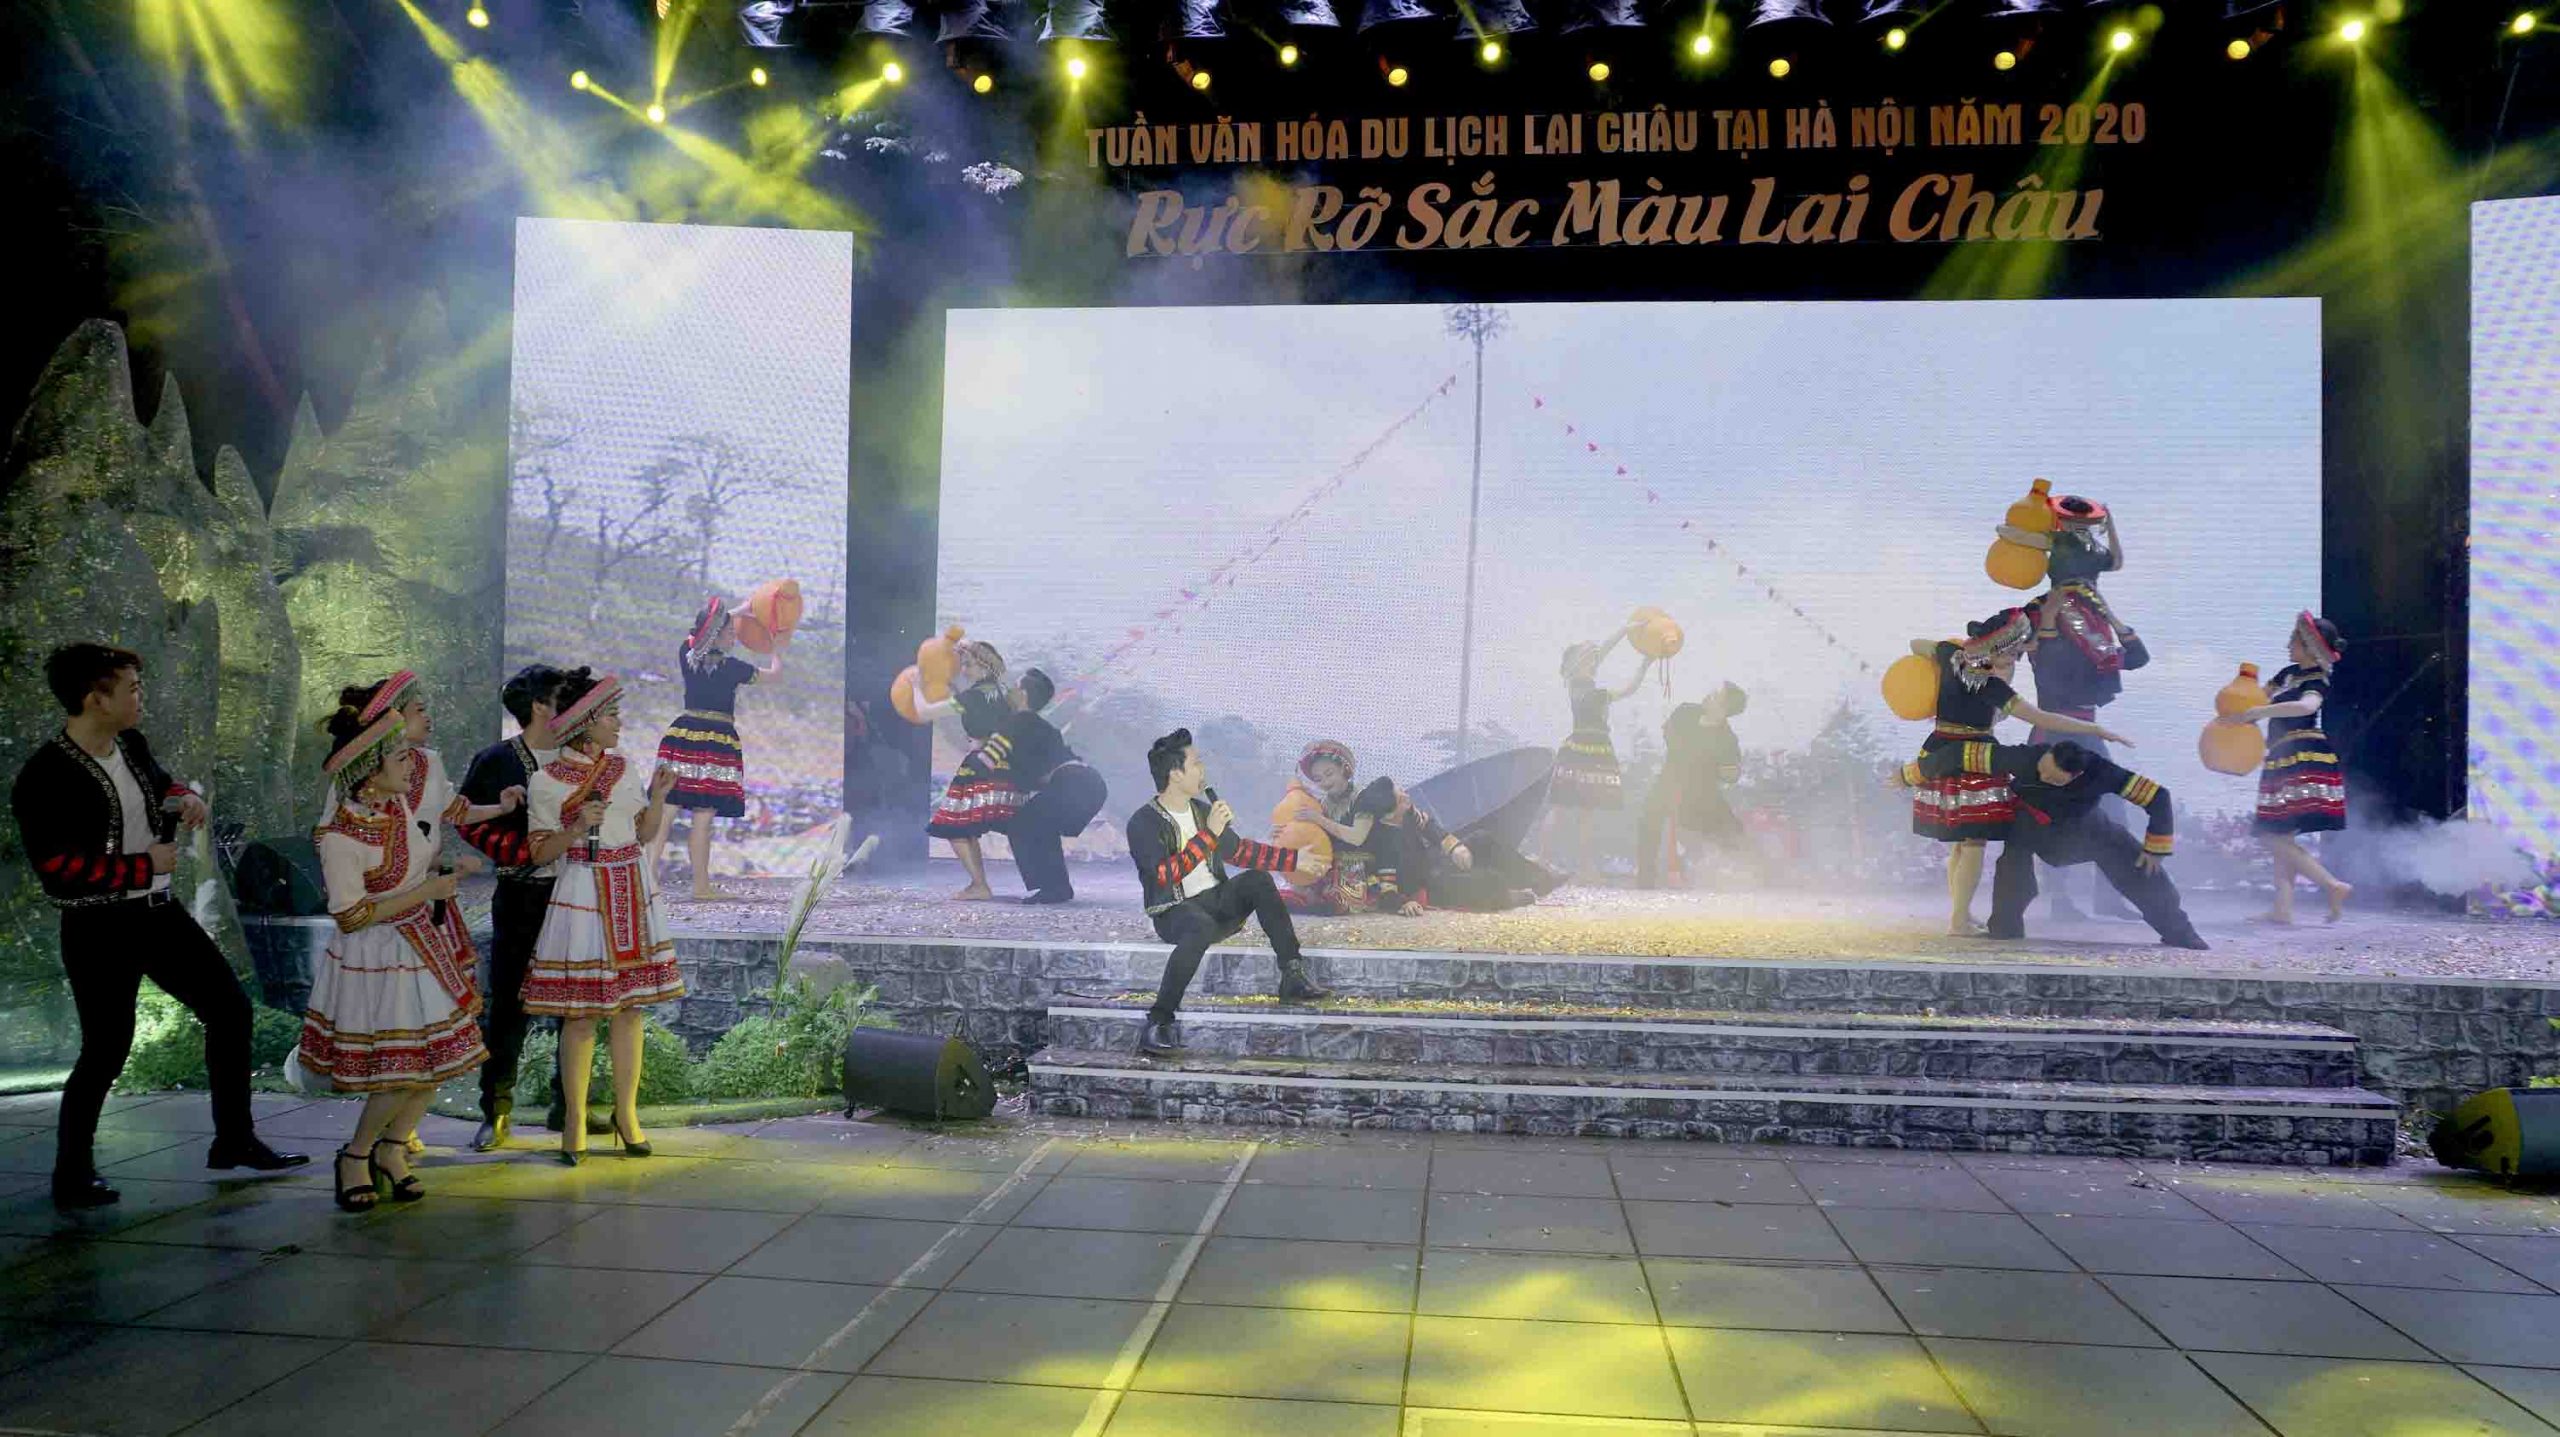 Khai mạc Tuần văn hóa du lịch Lai Châu được tổ chức tại tượng đài Lý Thái Tổ, Hoàn Kiếm, Hà Nội